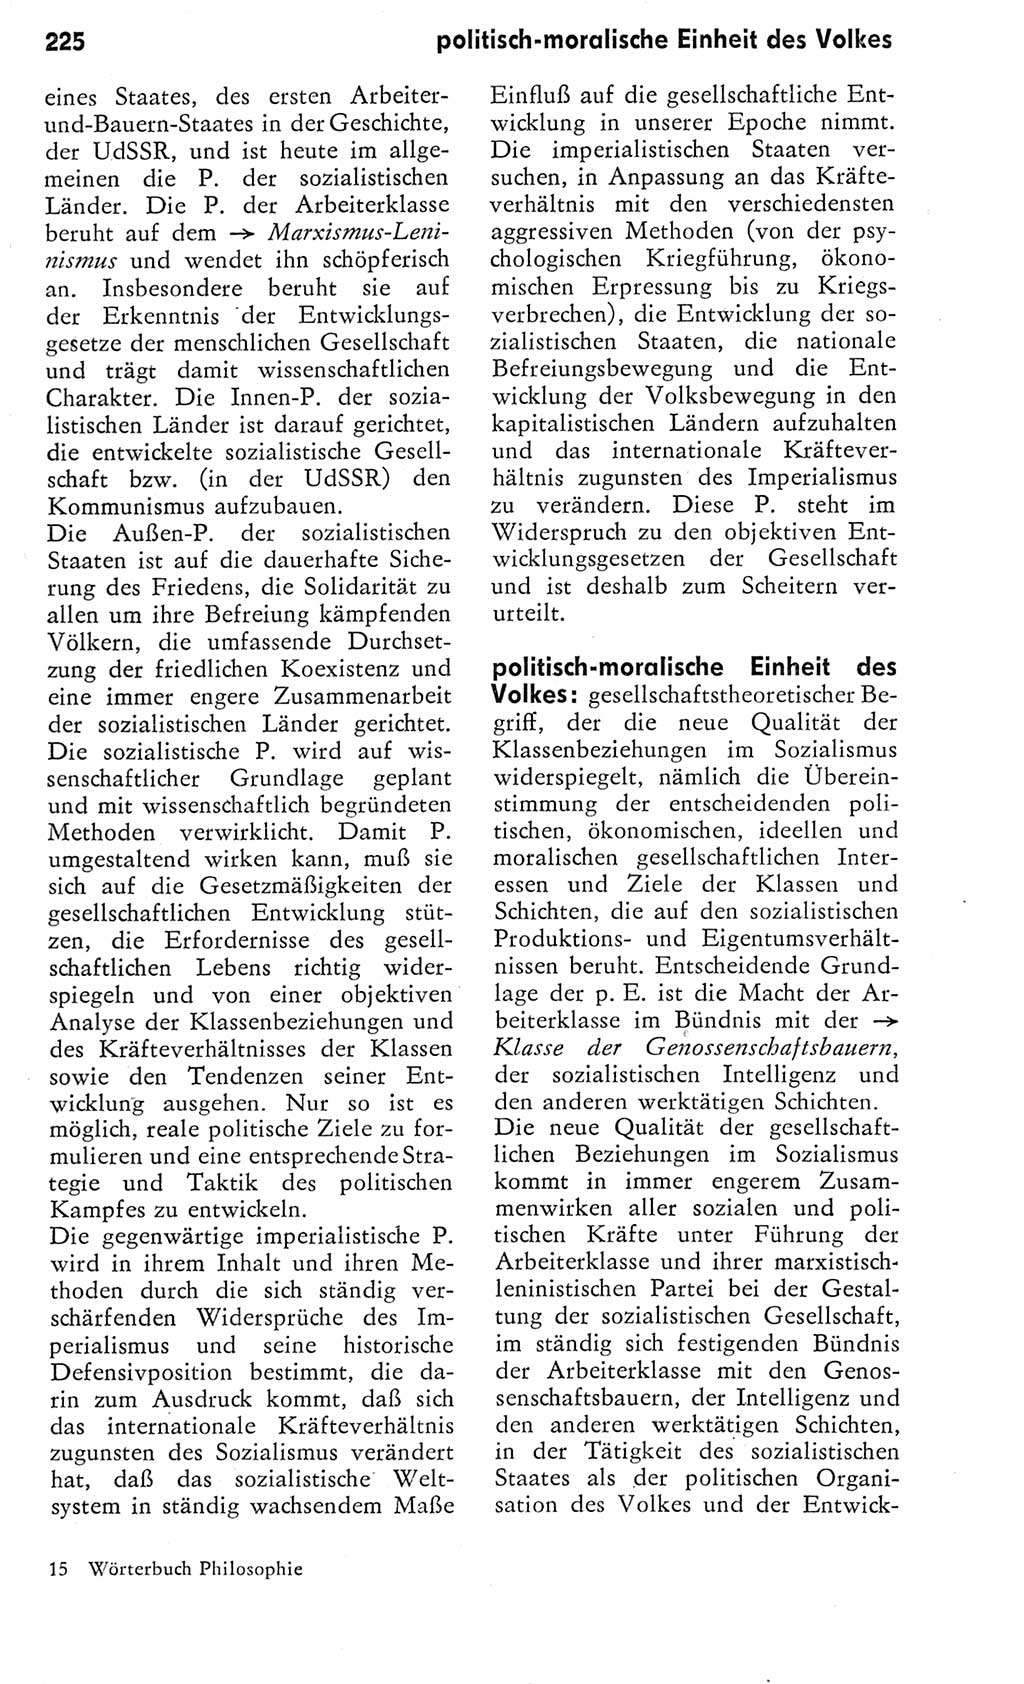 Kleines Wörterbuch der marxistisch-leninistischen Philosophie [Deutsche Demokratische Republik (DDR)] 1975, Seite 225 (Kl. Wb. ML Phil. DDR 1975, S. 225)